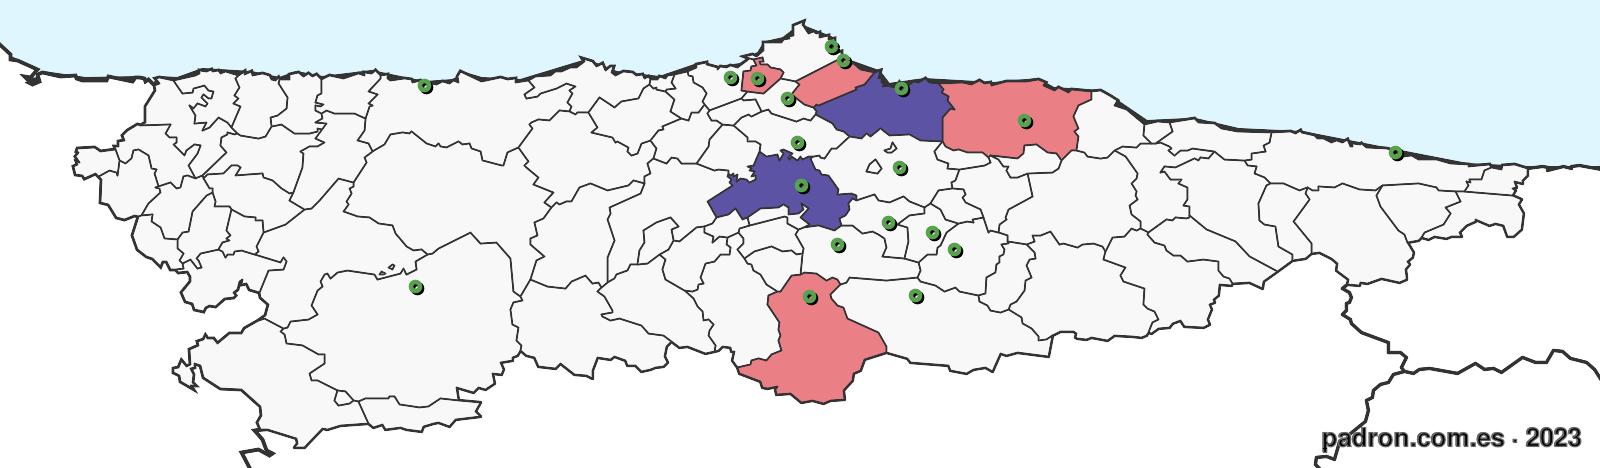 tunecinos en asturias.